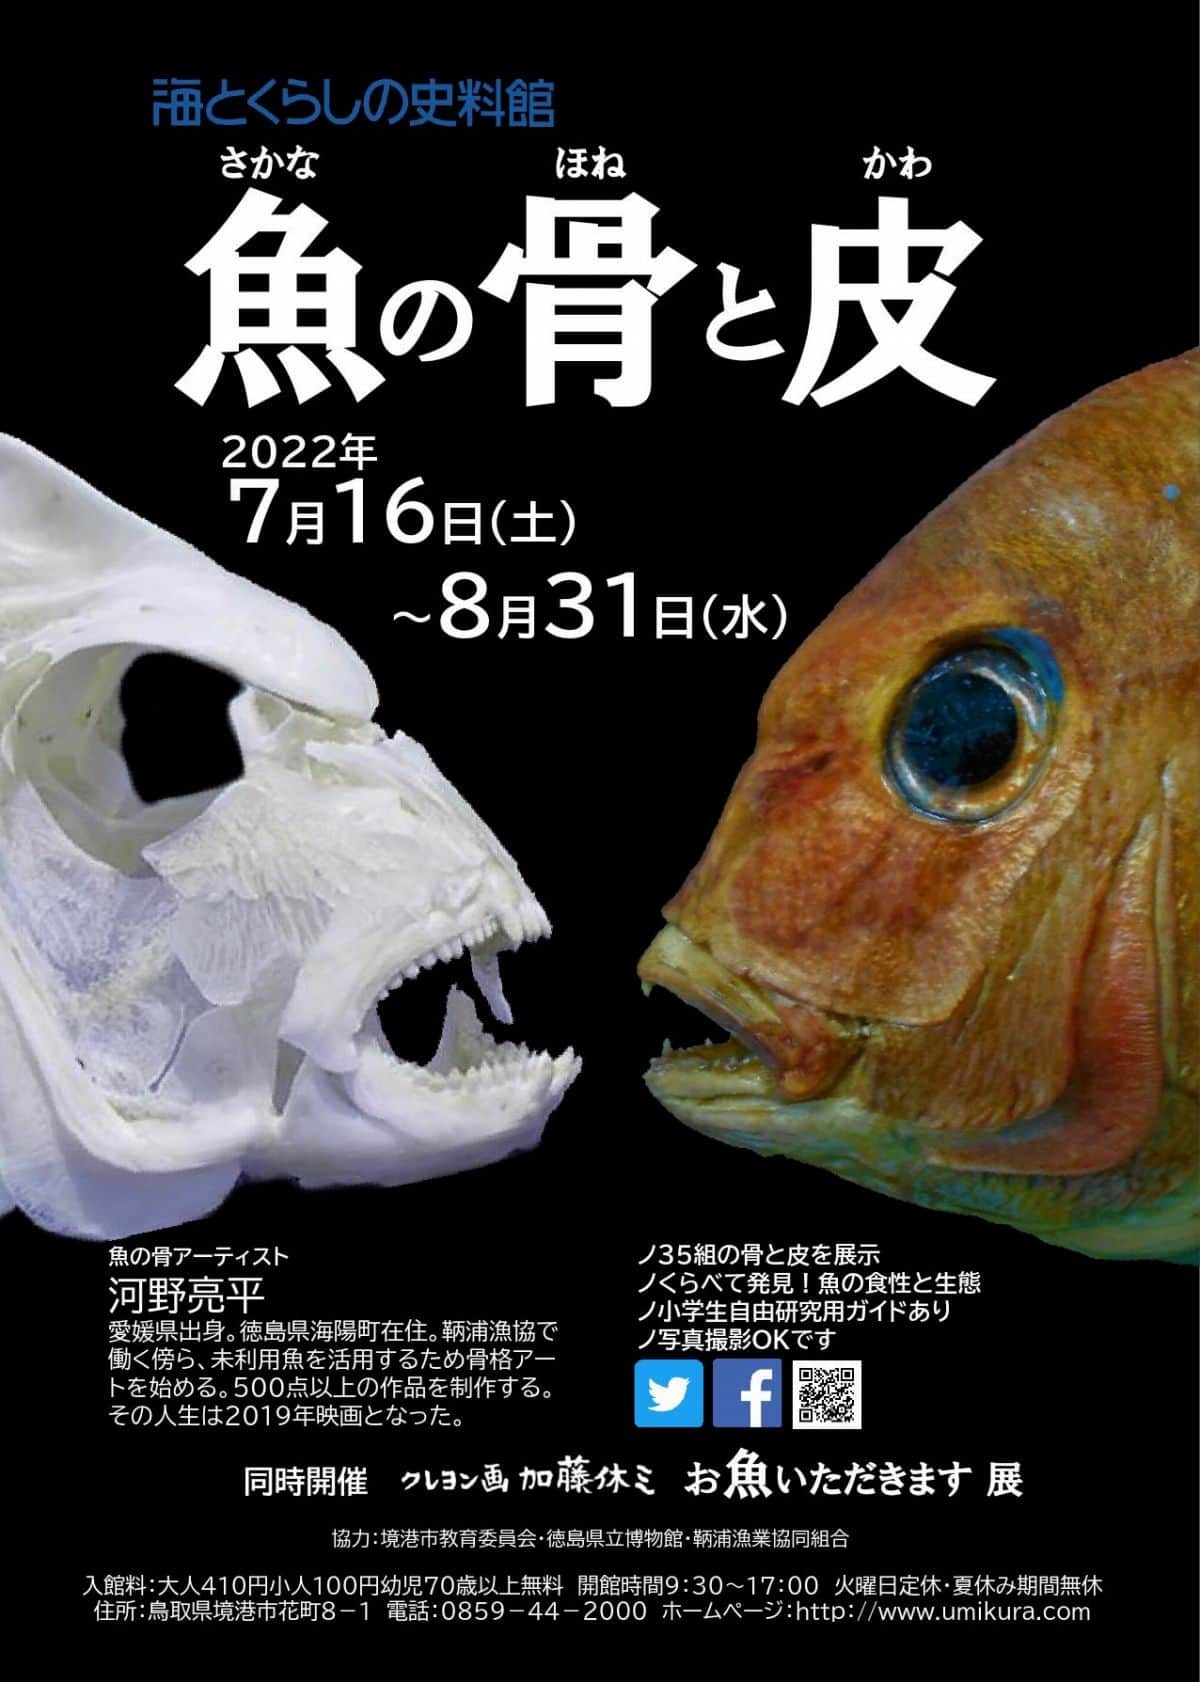 海とくらしの史料館で開催中のイベント「魚の骨と皮展」ポスター